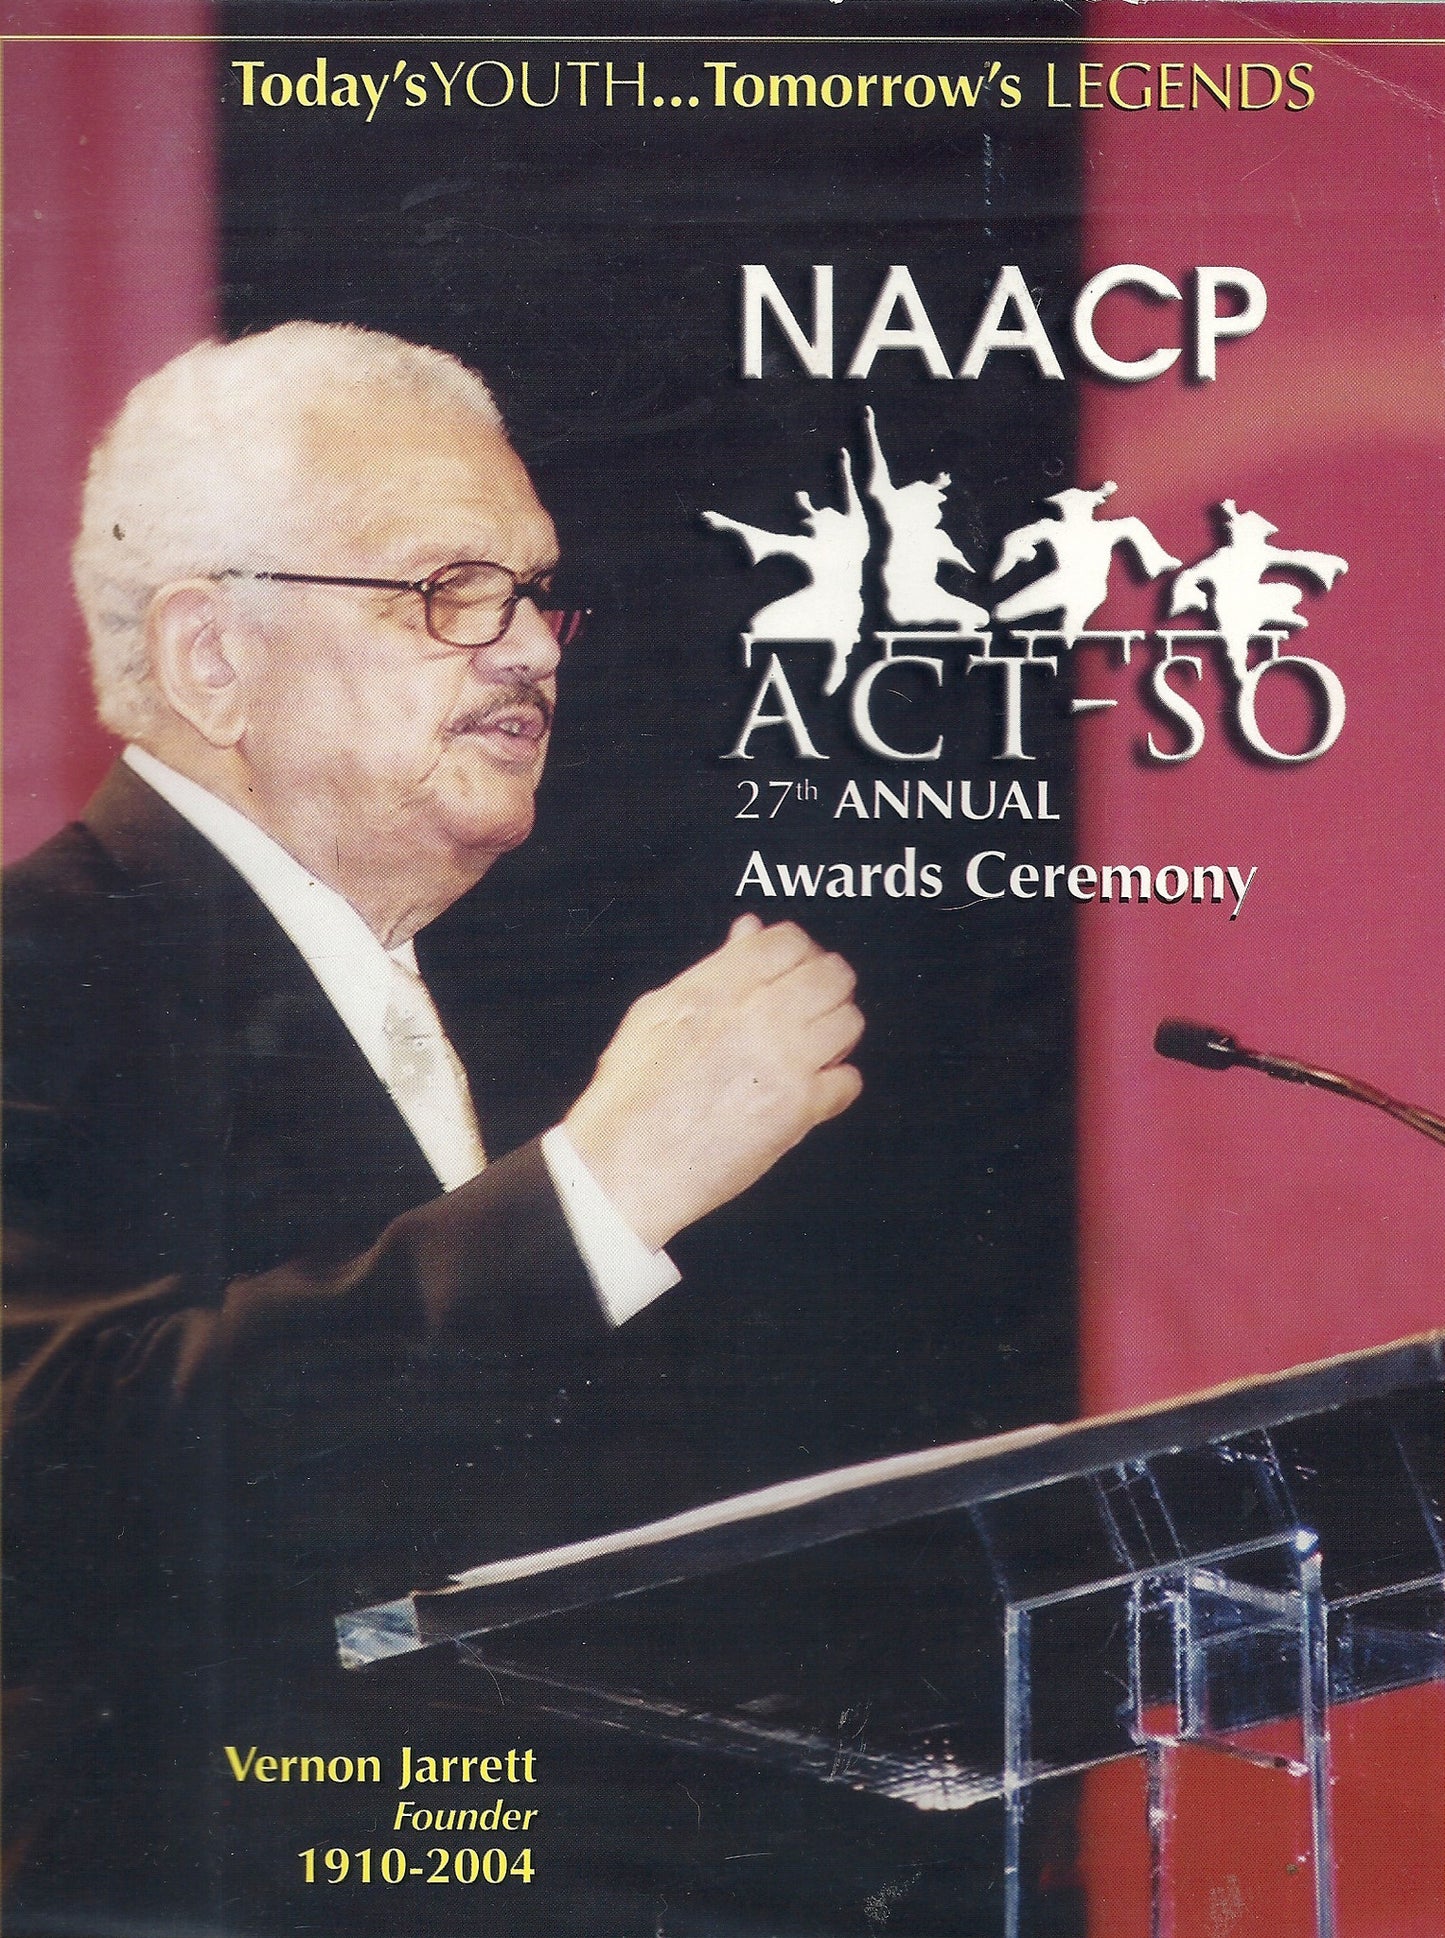 07 00 2004 NAACP ACT-SO